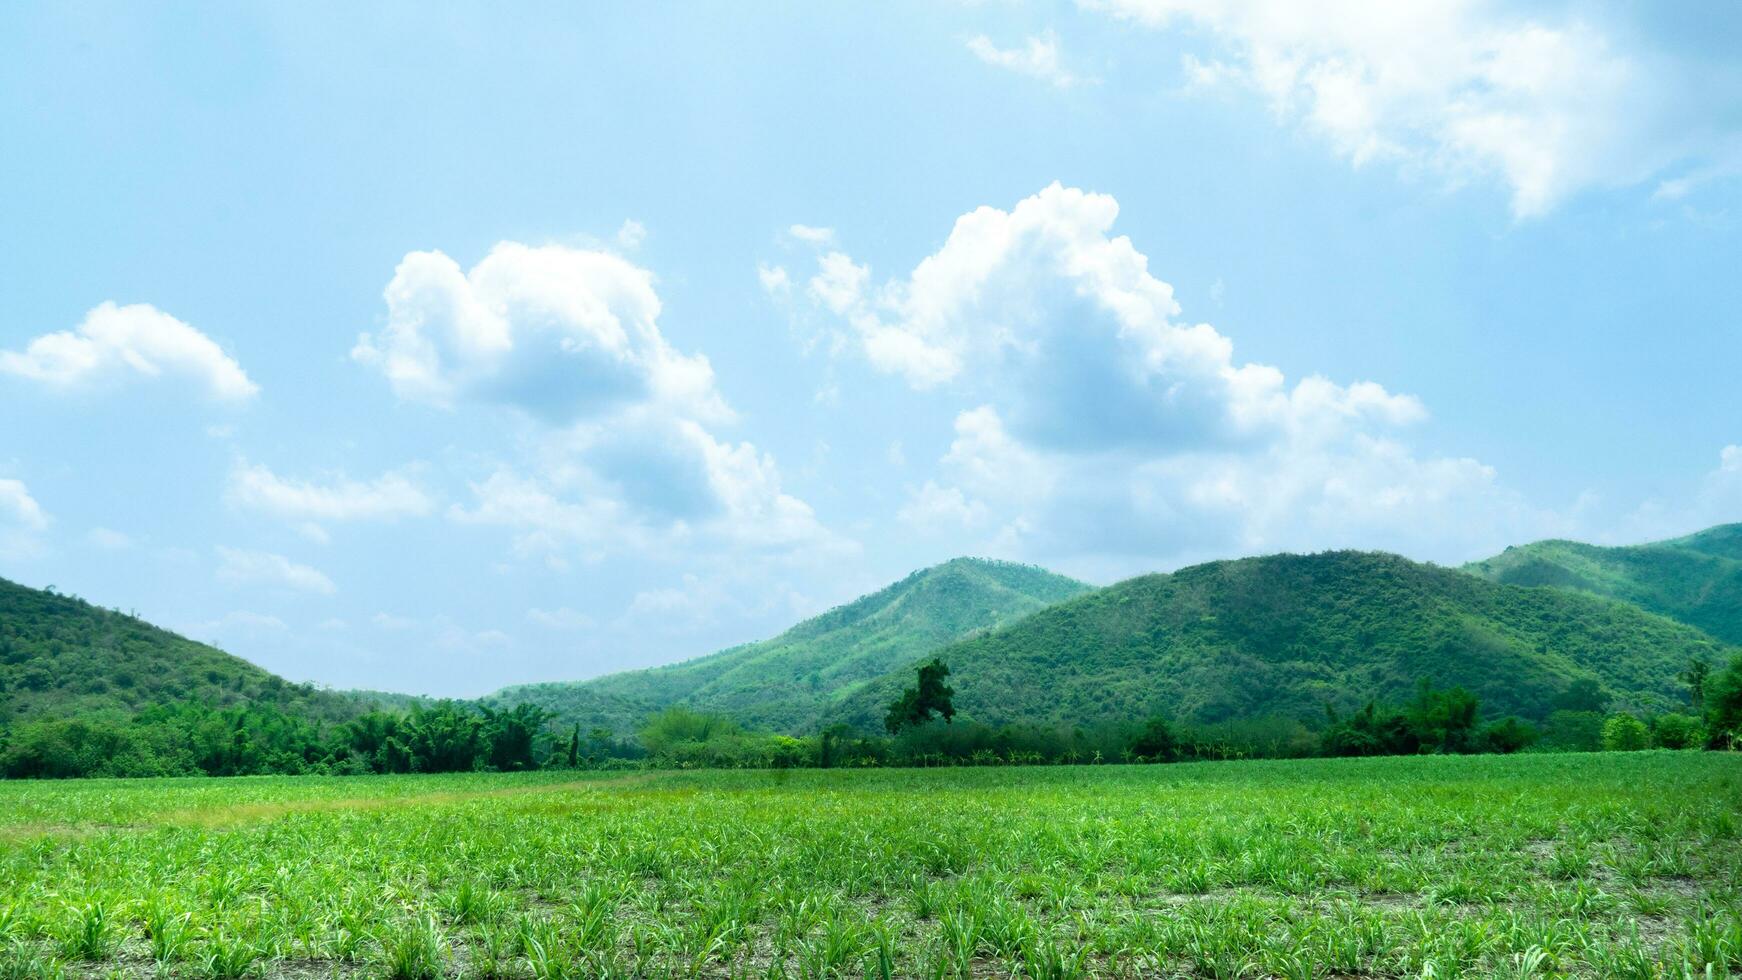 agrícola área do a açúcar bengala folhas estava inicialmente plantado. lá estão verde florestas e lindo montanhas intercalado debaixo a azul céu e branco nuvens. foto